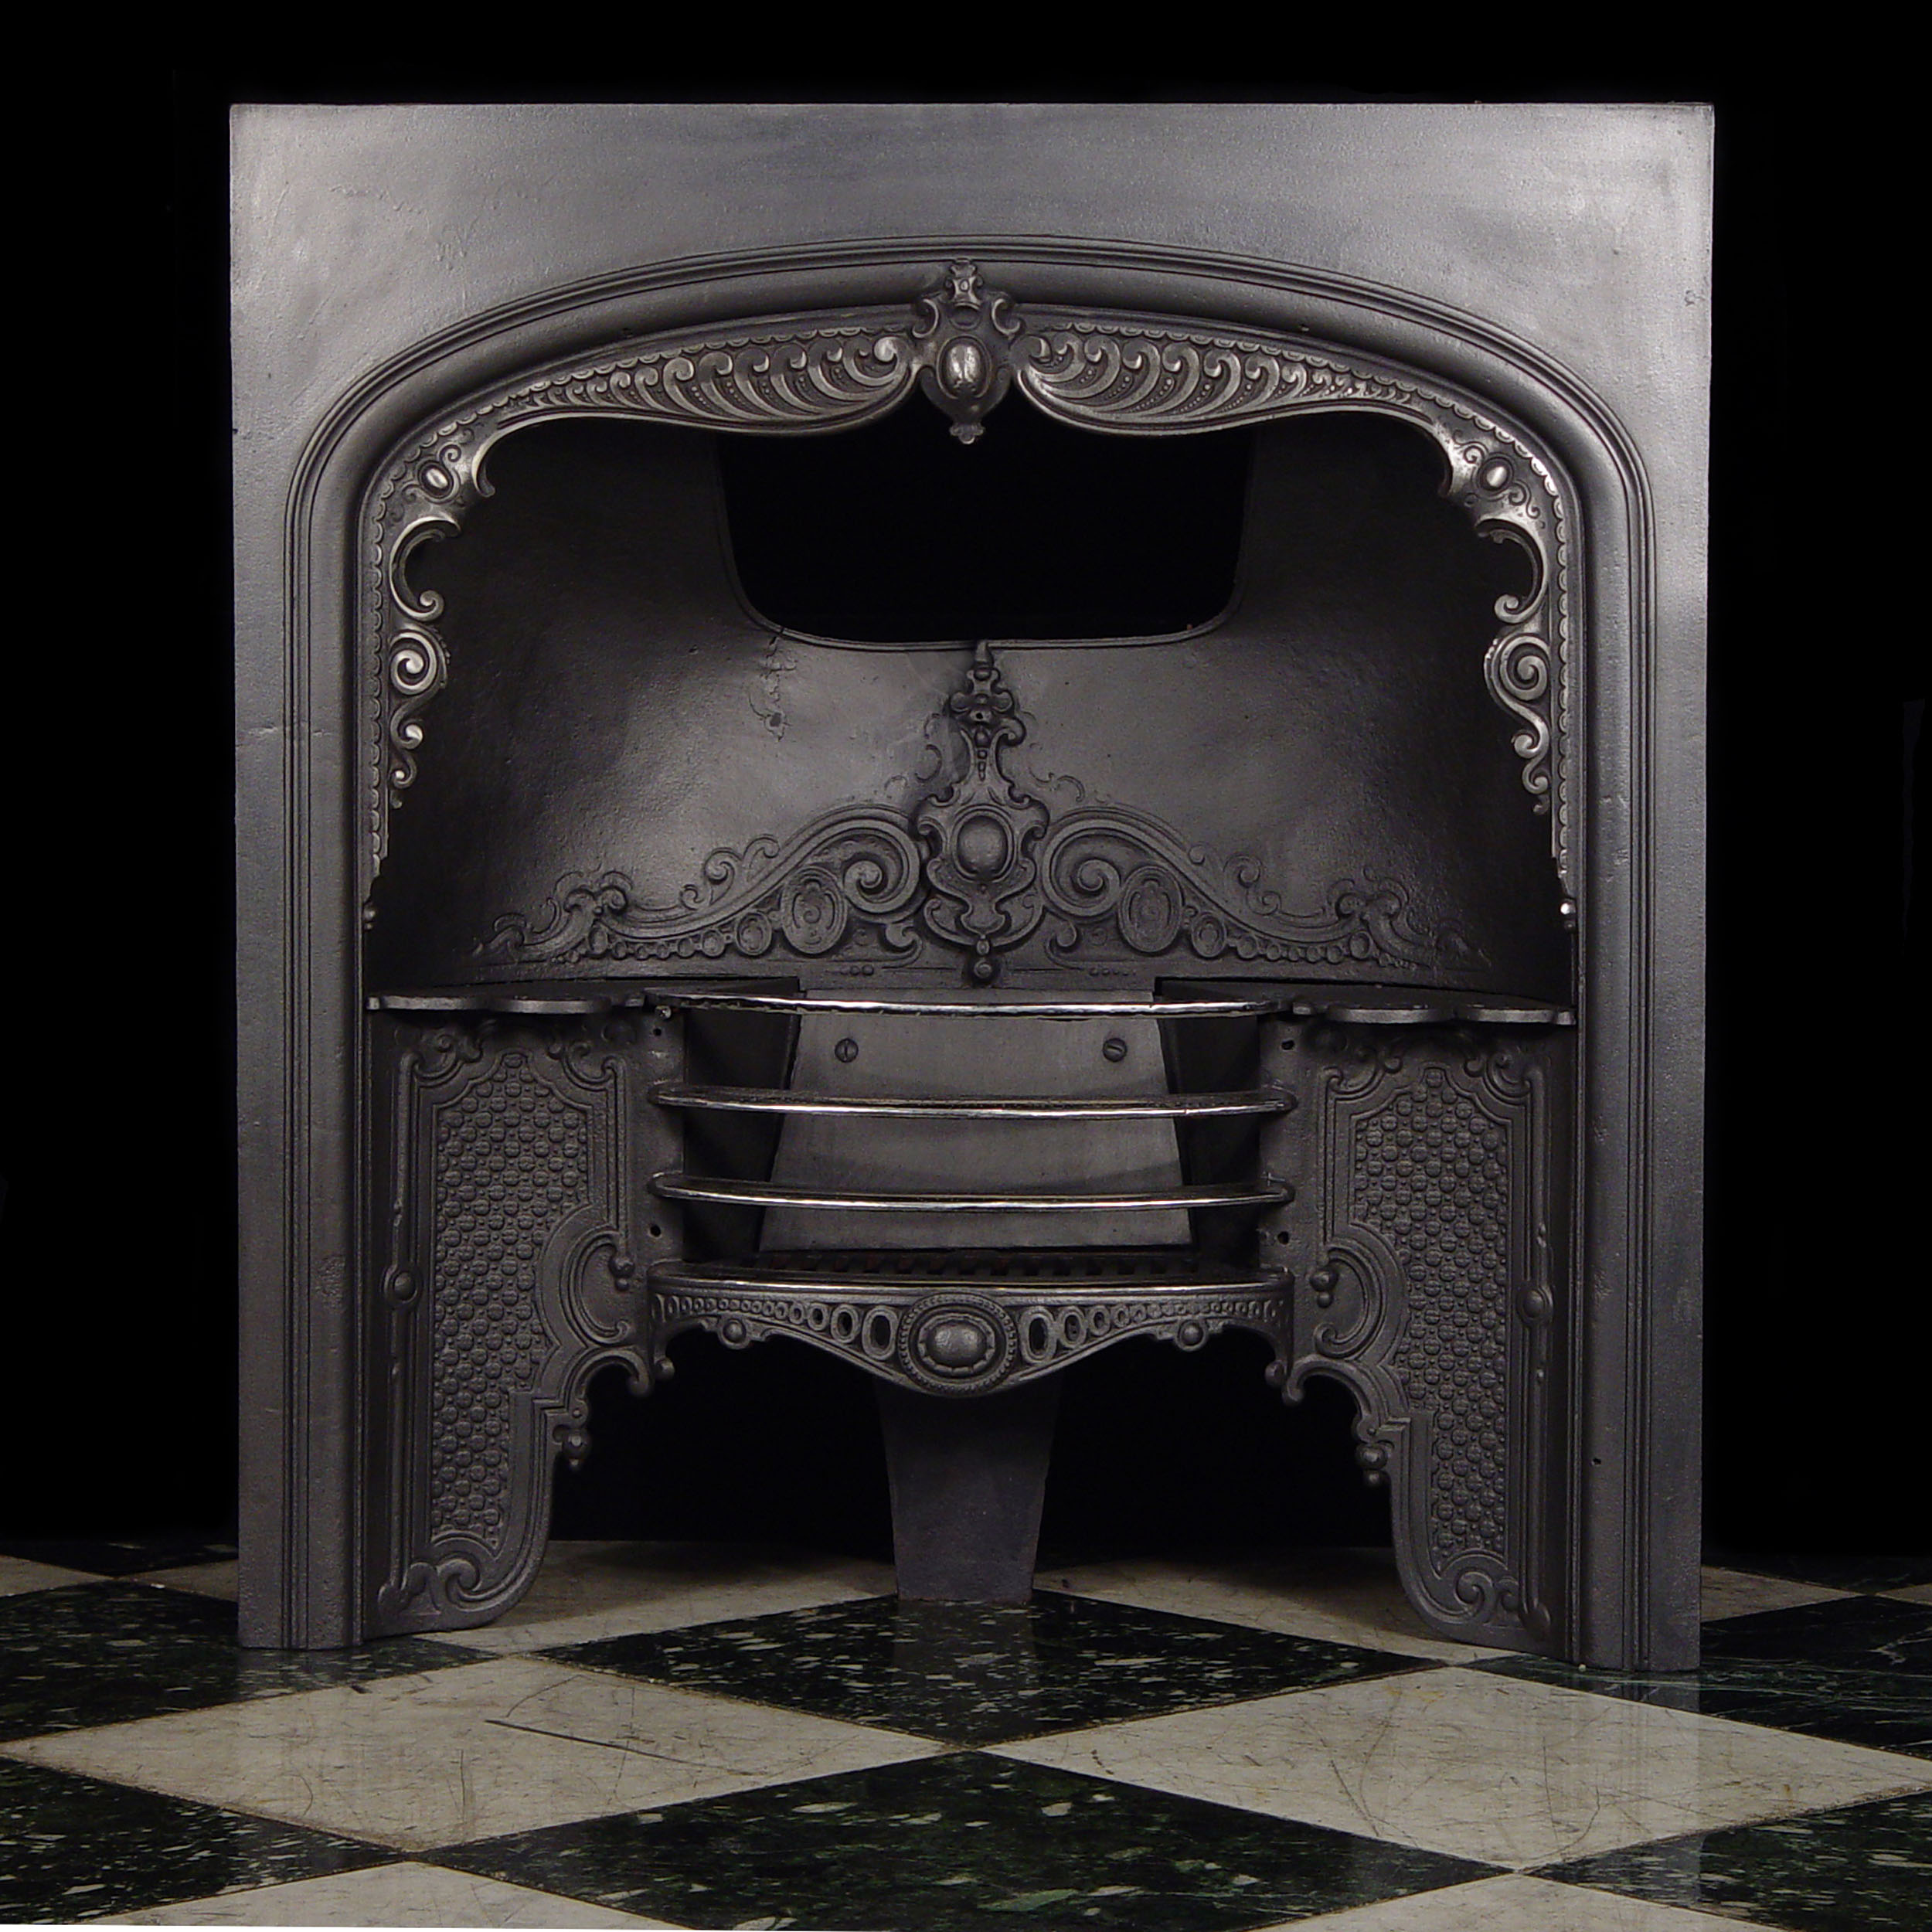 An Antique Cast Iron Fireplace Insert
